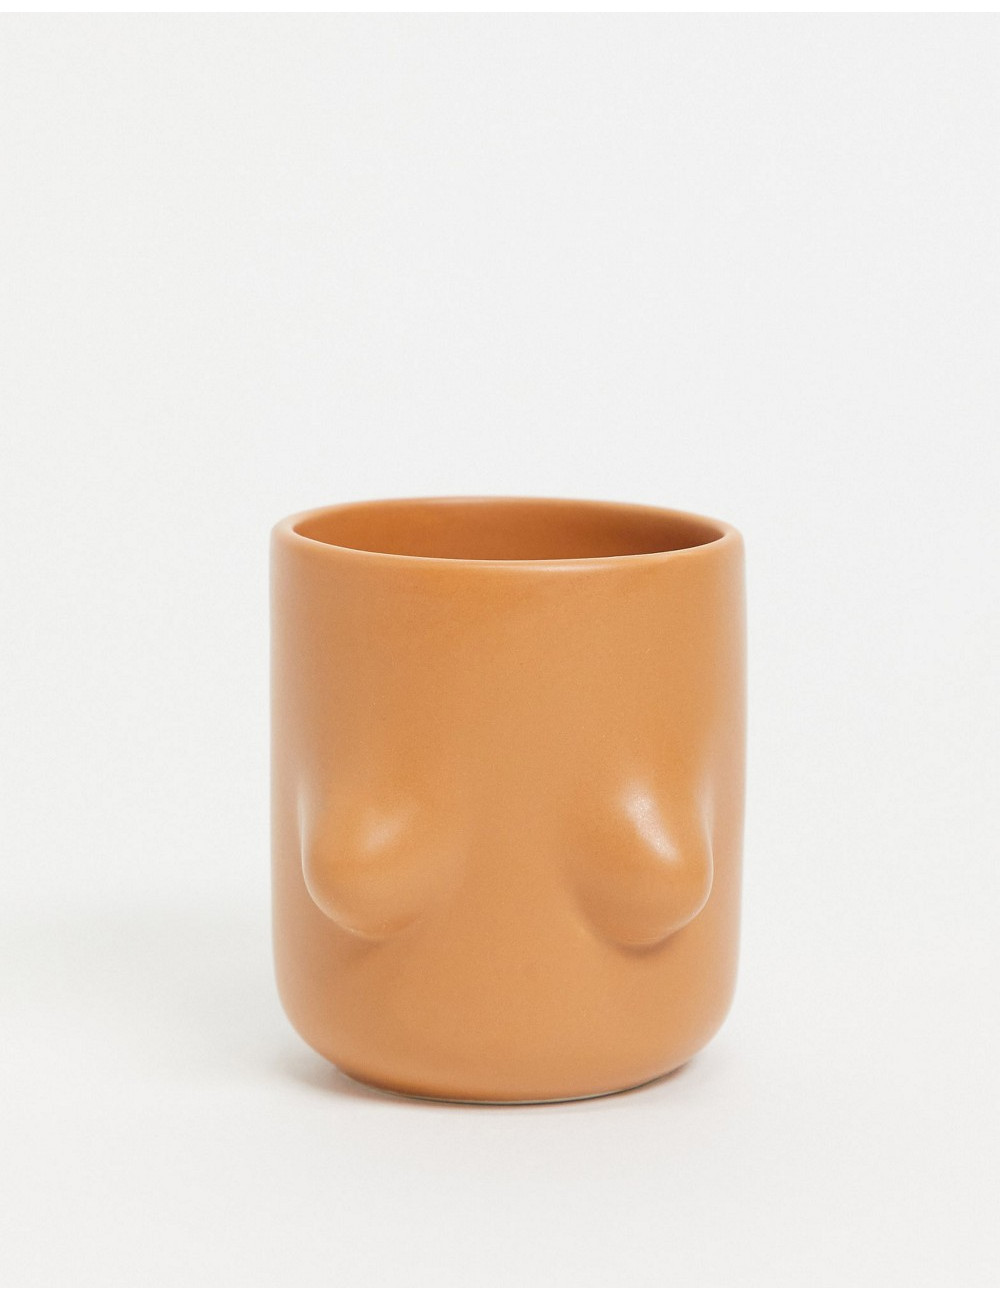 Monki Titti body mug in brown